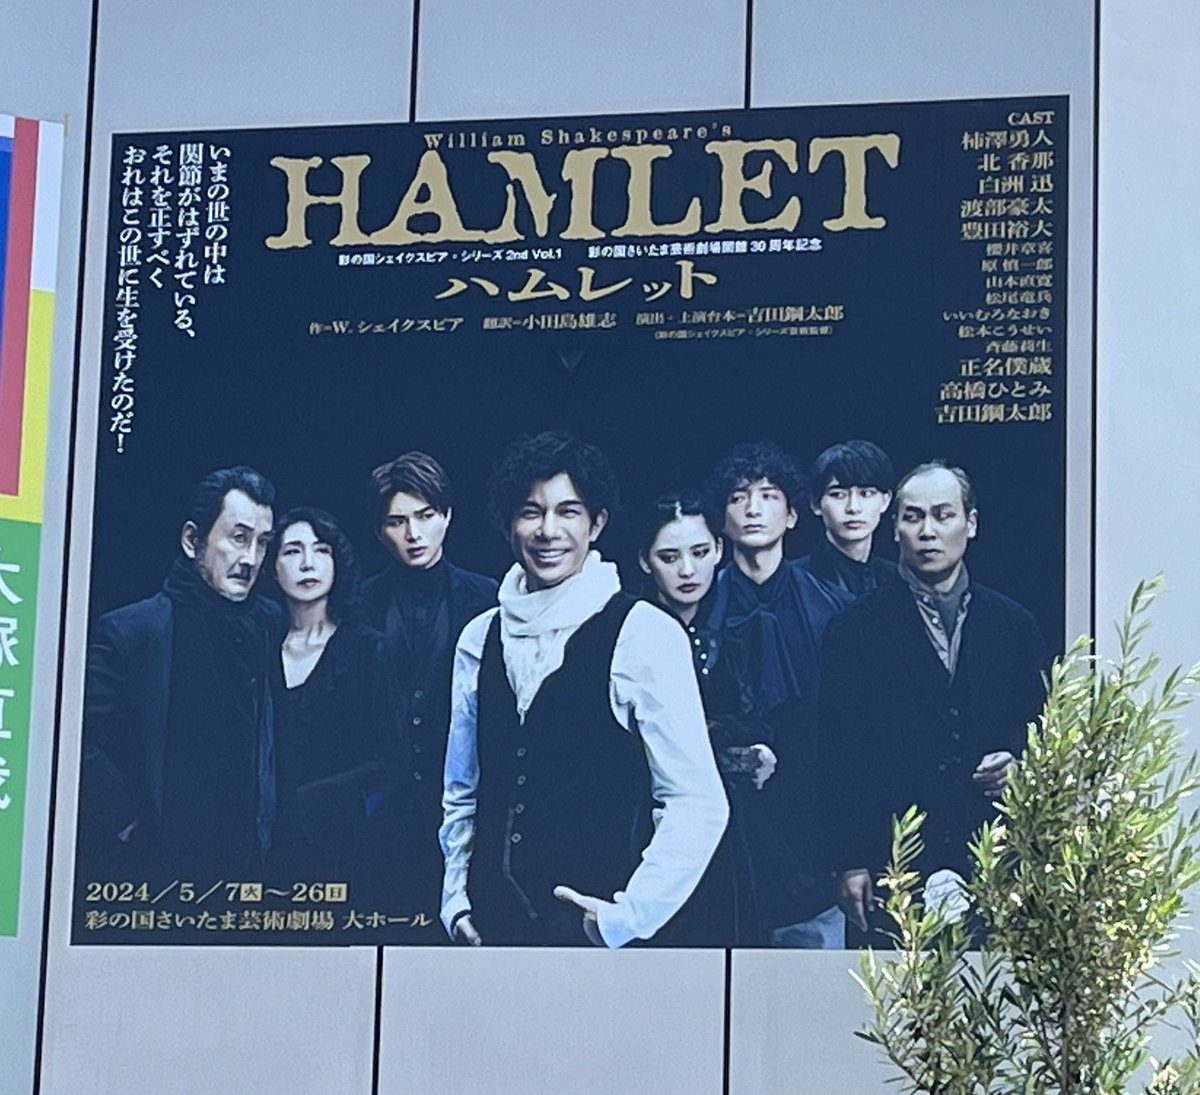 久しぶりに観劇✨ ハムレット。いつも思うのだけどハムレットさん深く考えすぎたよ。